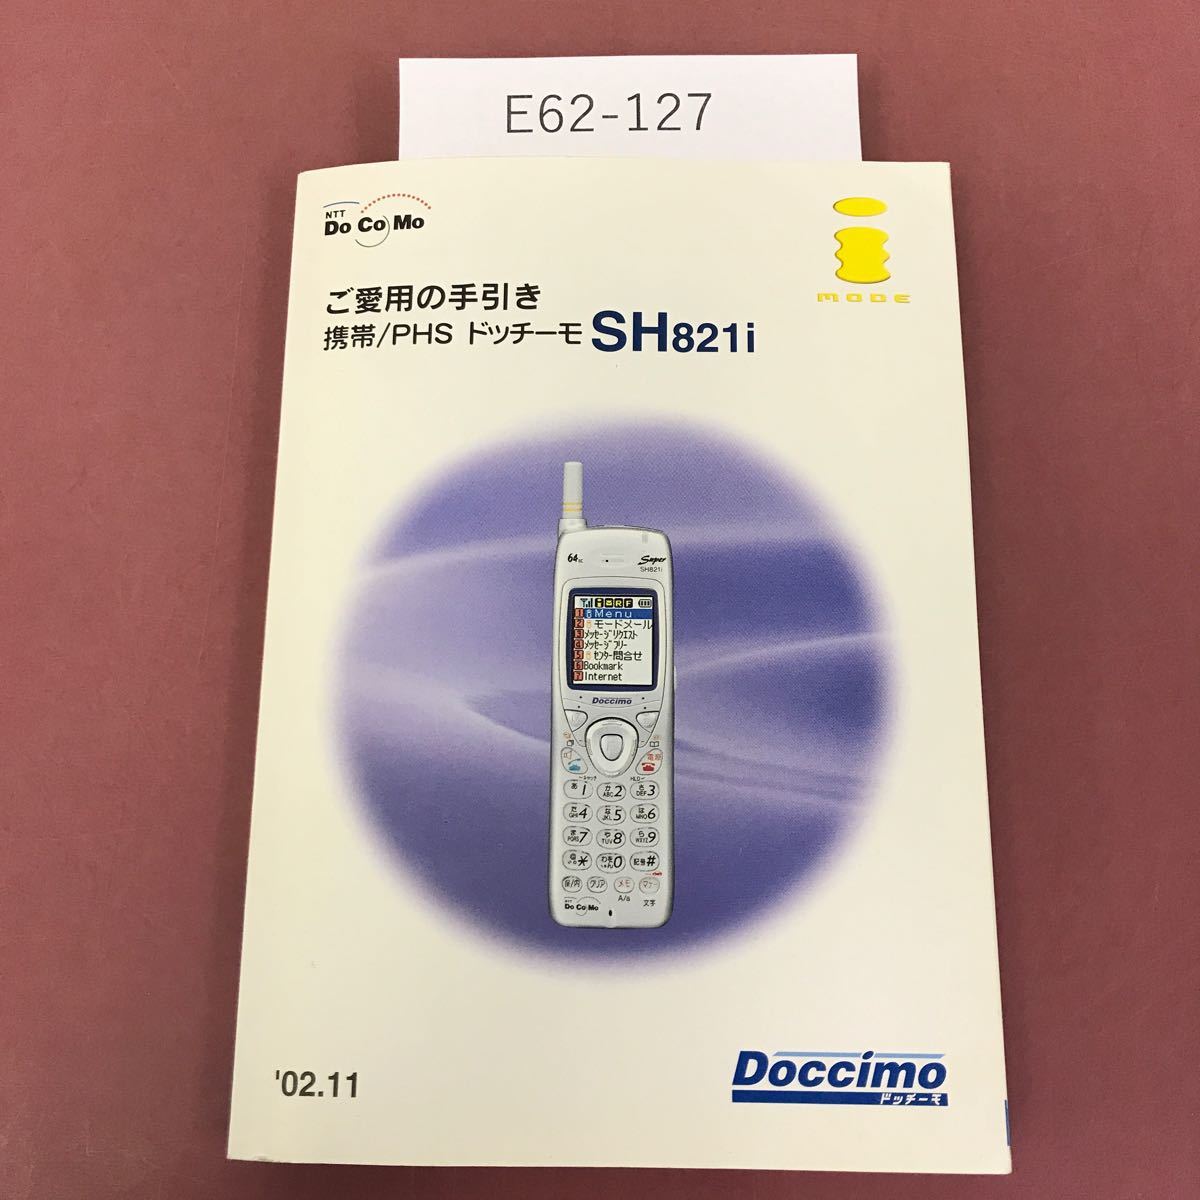 E62-127 携帯/PHS ドッチーモ SH821i ご愛用の手引き '02.11 NTT DOCOMO _画像1